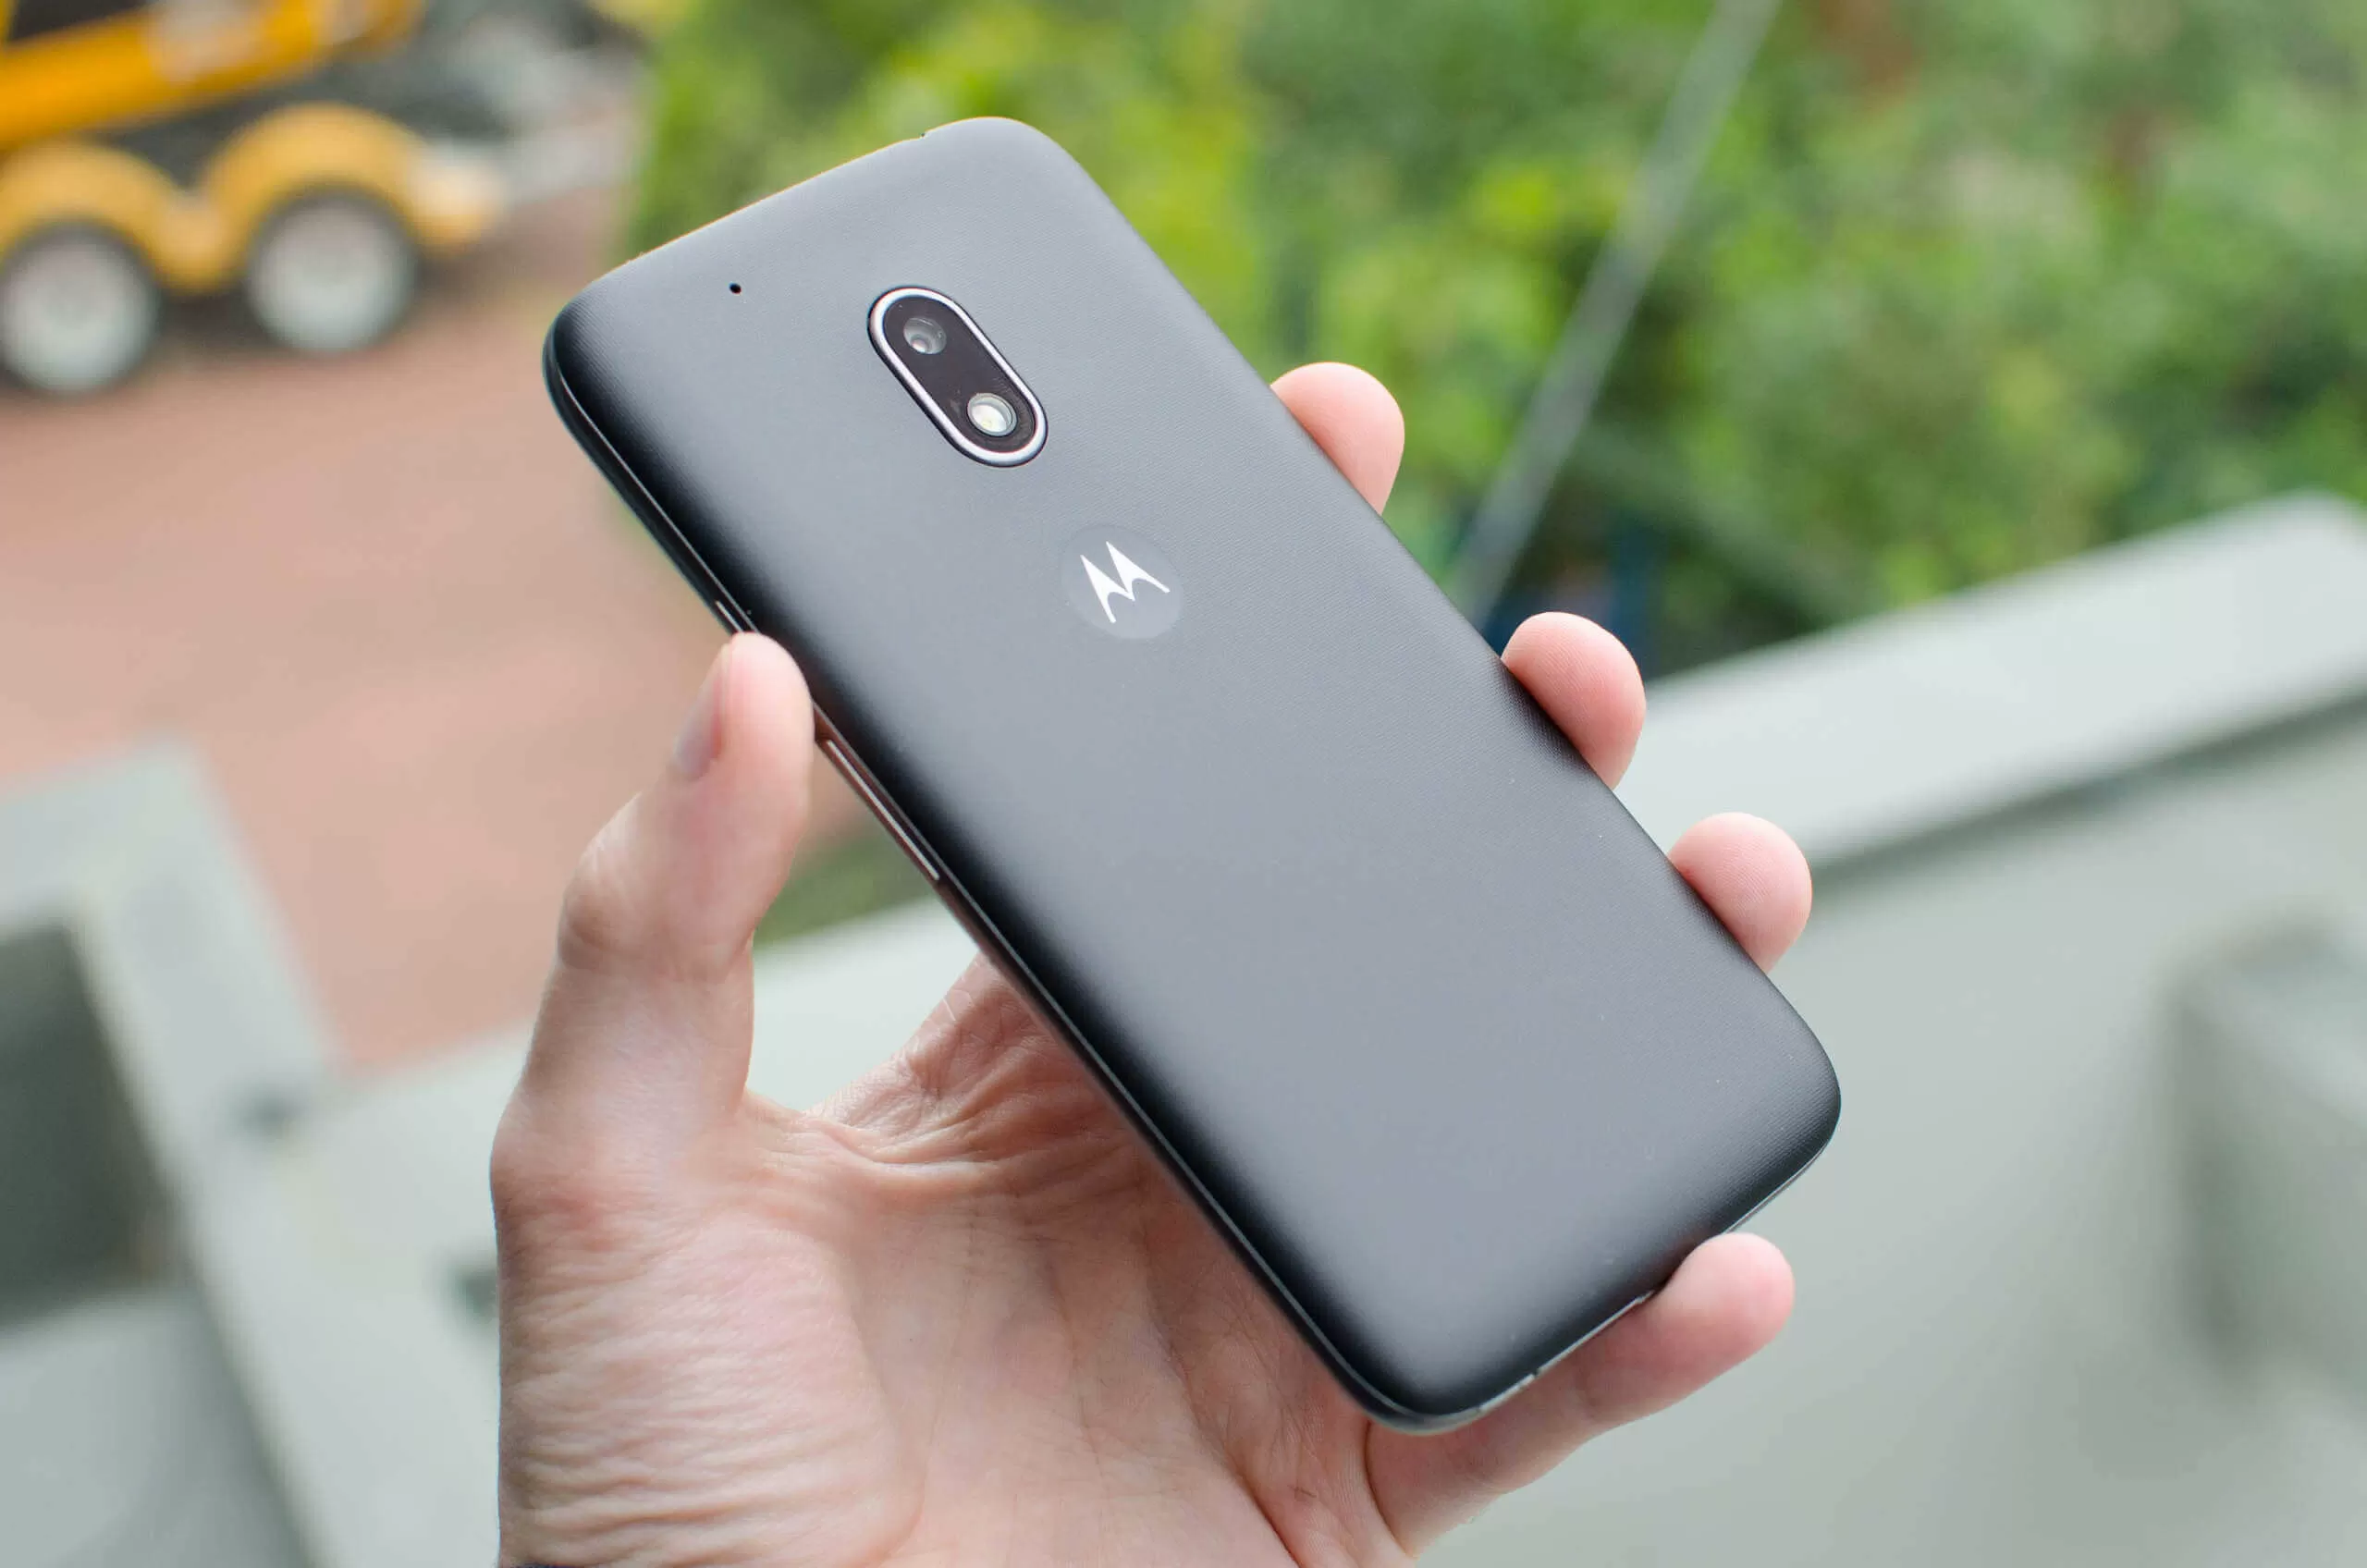 ongeduldig Verpersoonlijking Authenticatie Motorola Moto G4 Play Review | TechSpot